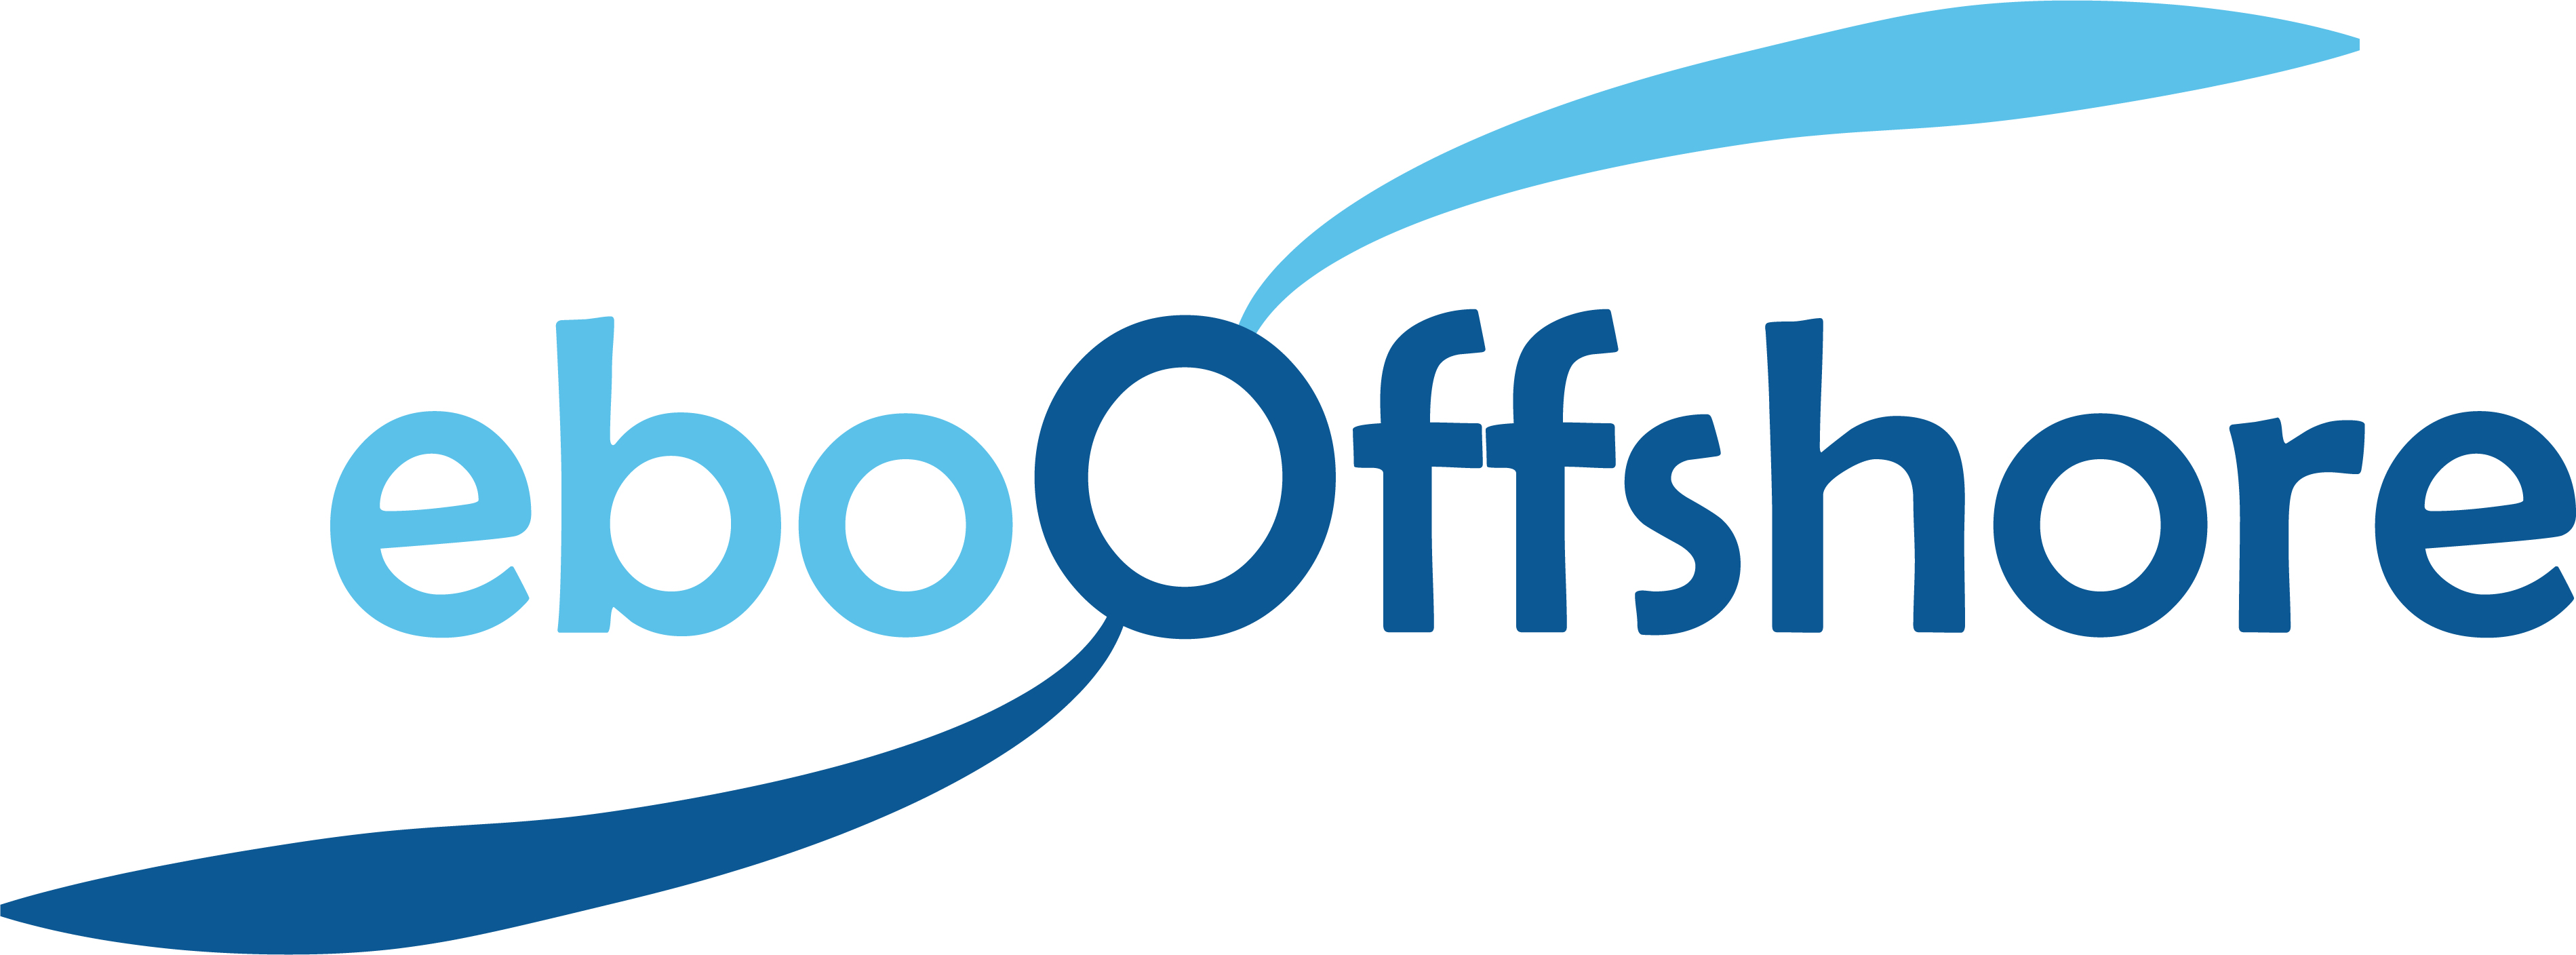 ebo_offshore_logo.jpg